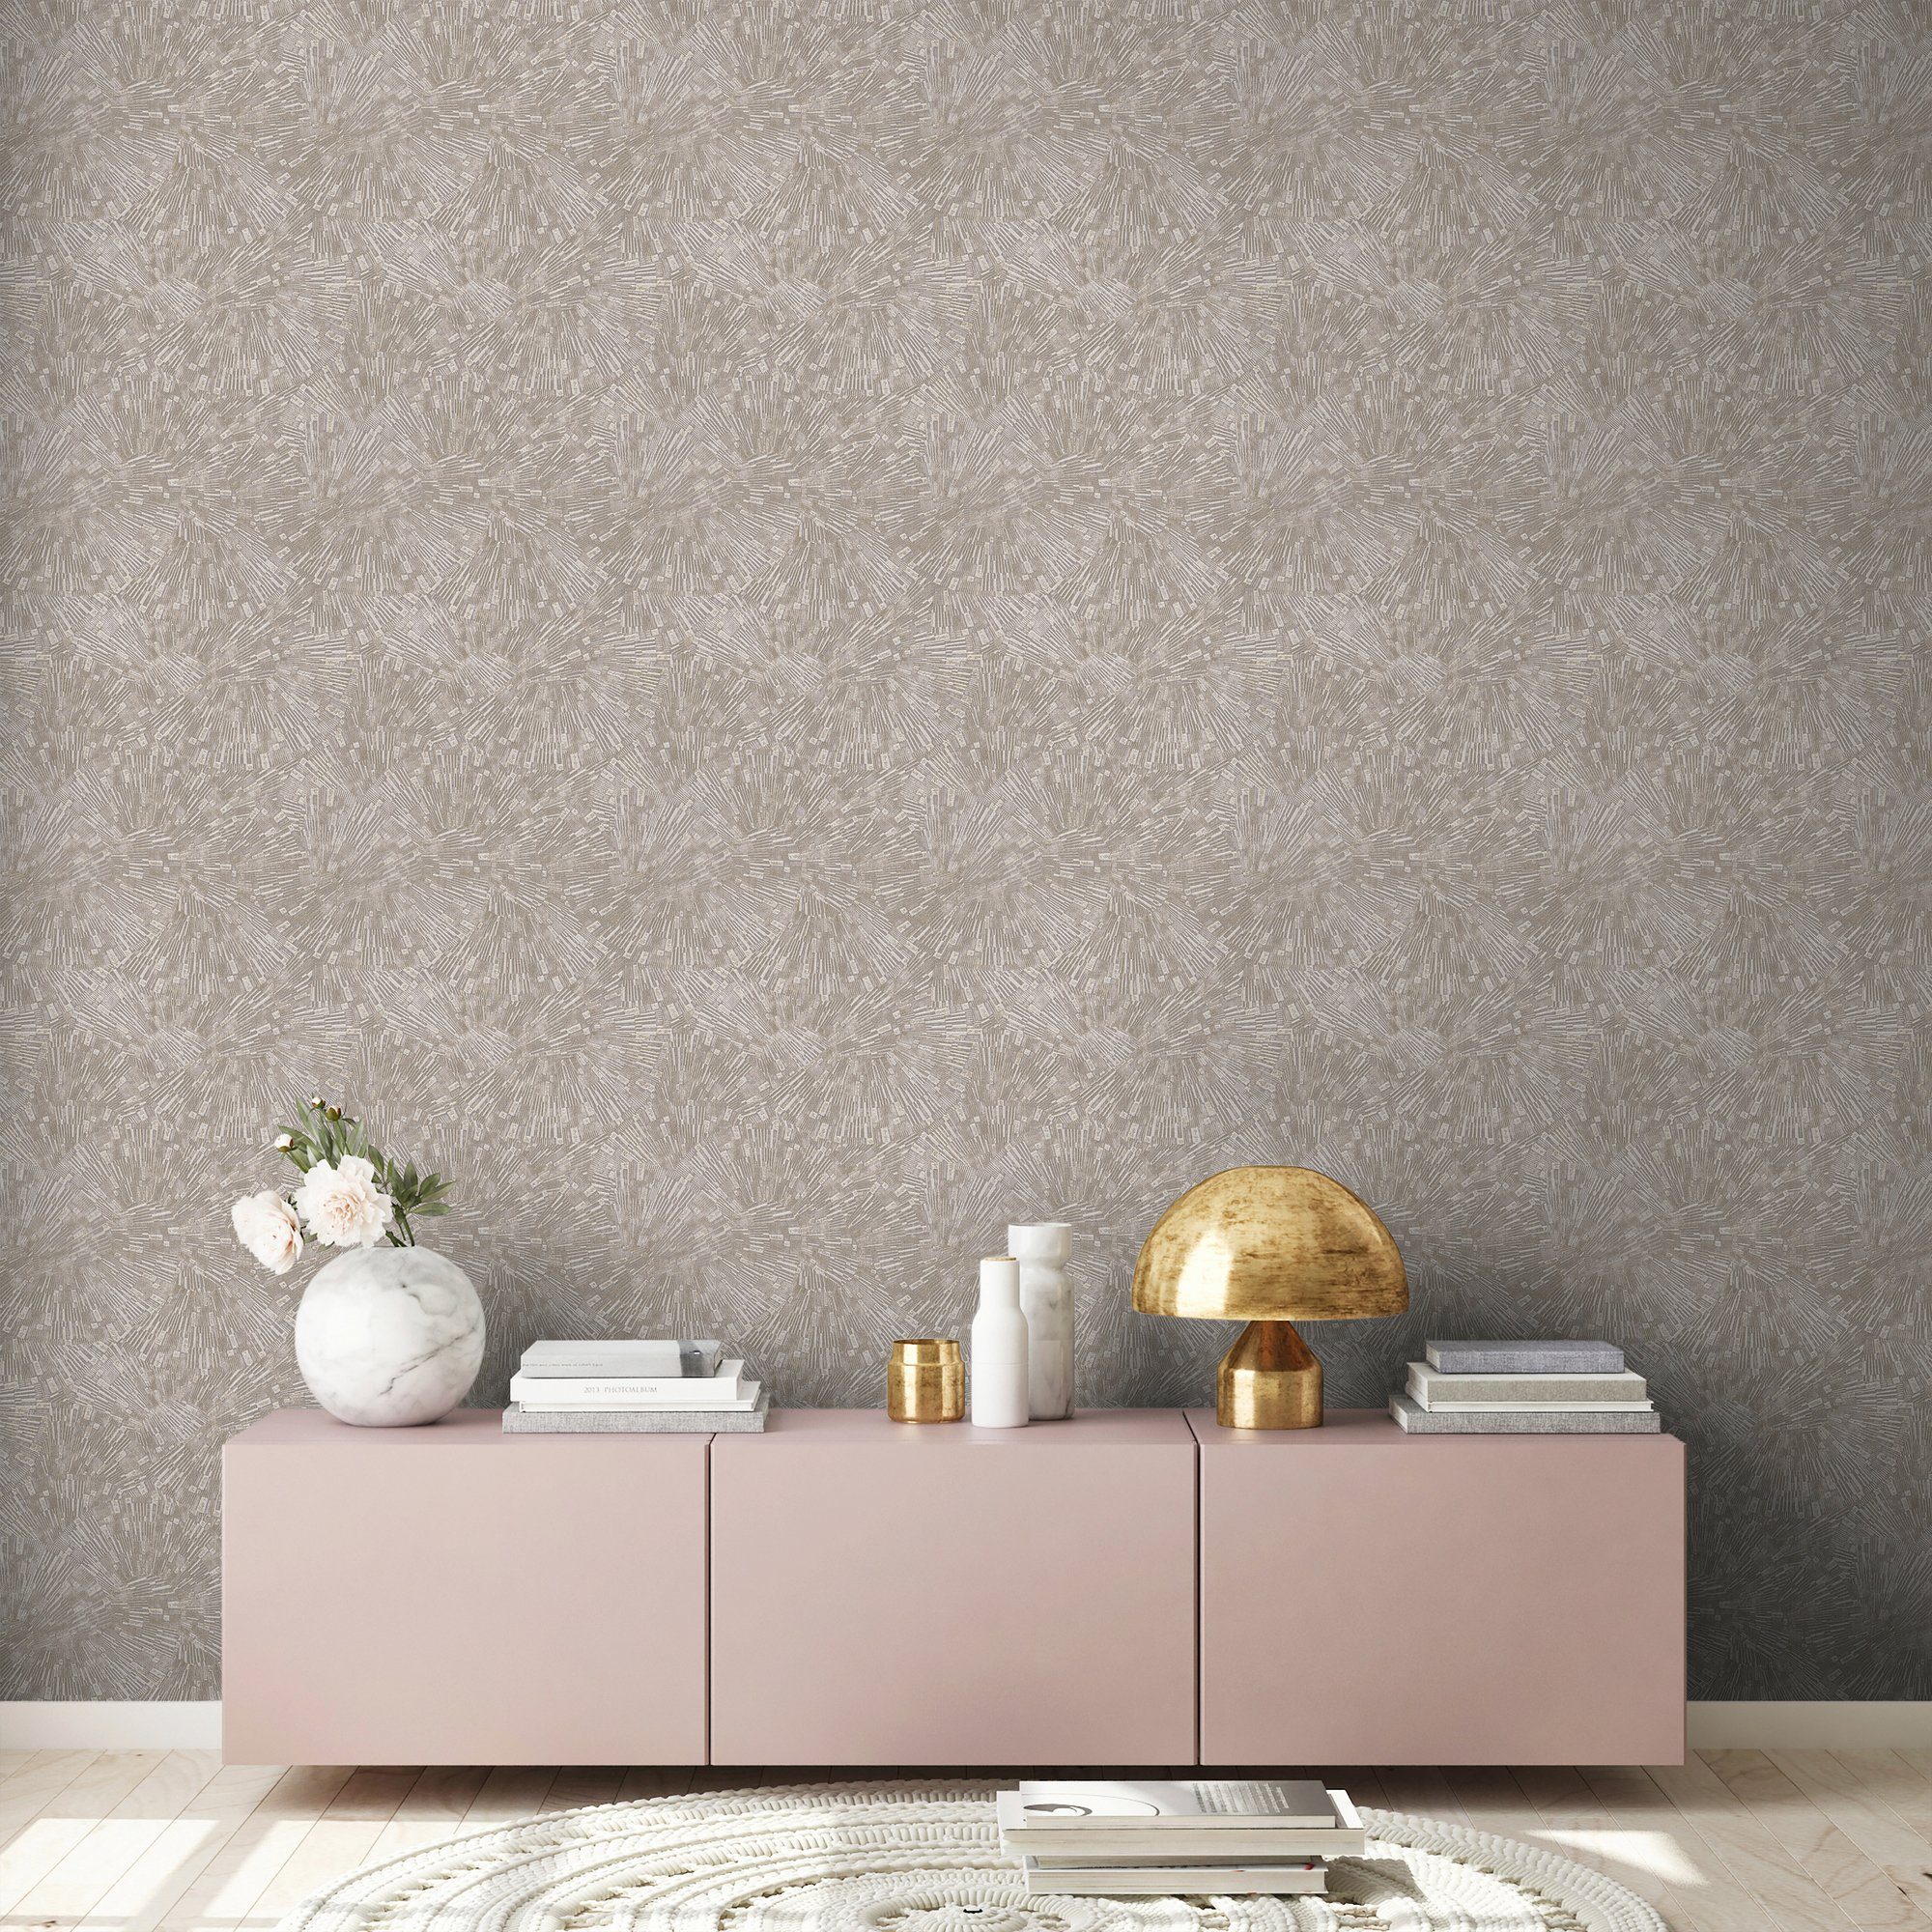 3D Moderne living Création Tapete Vliestapete beige Titanium, A.S. walls Effekt strukturiert, gemustert,